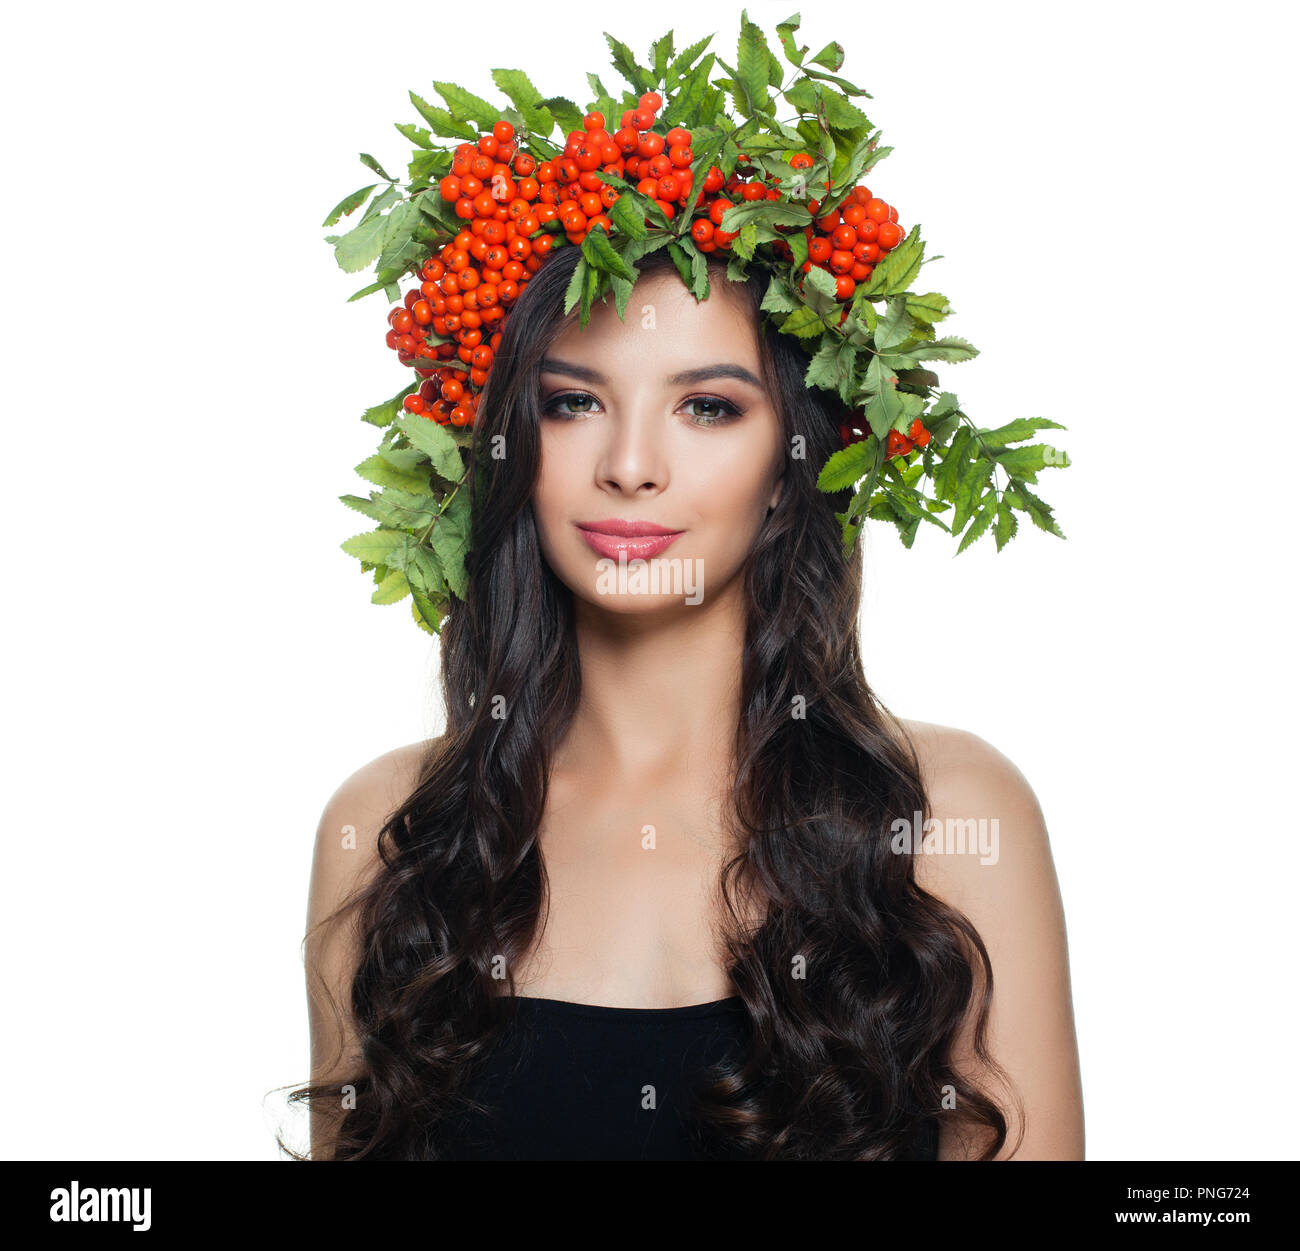 Schöne brünette Frau mit gesunden lockige Haare, natürliches Make up und roten Beeren und grüne Blätter Kranz auf weißem Hintergrund Stockfoto